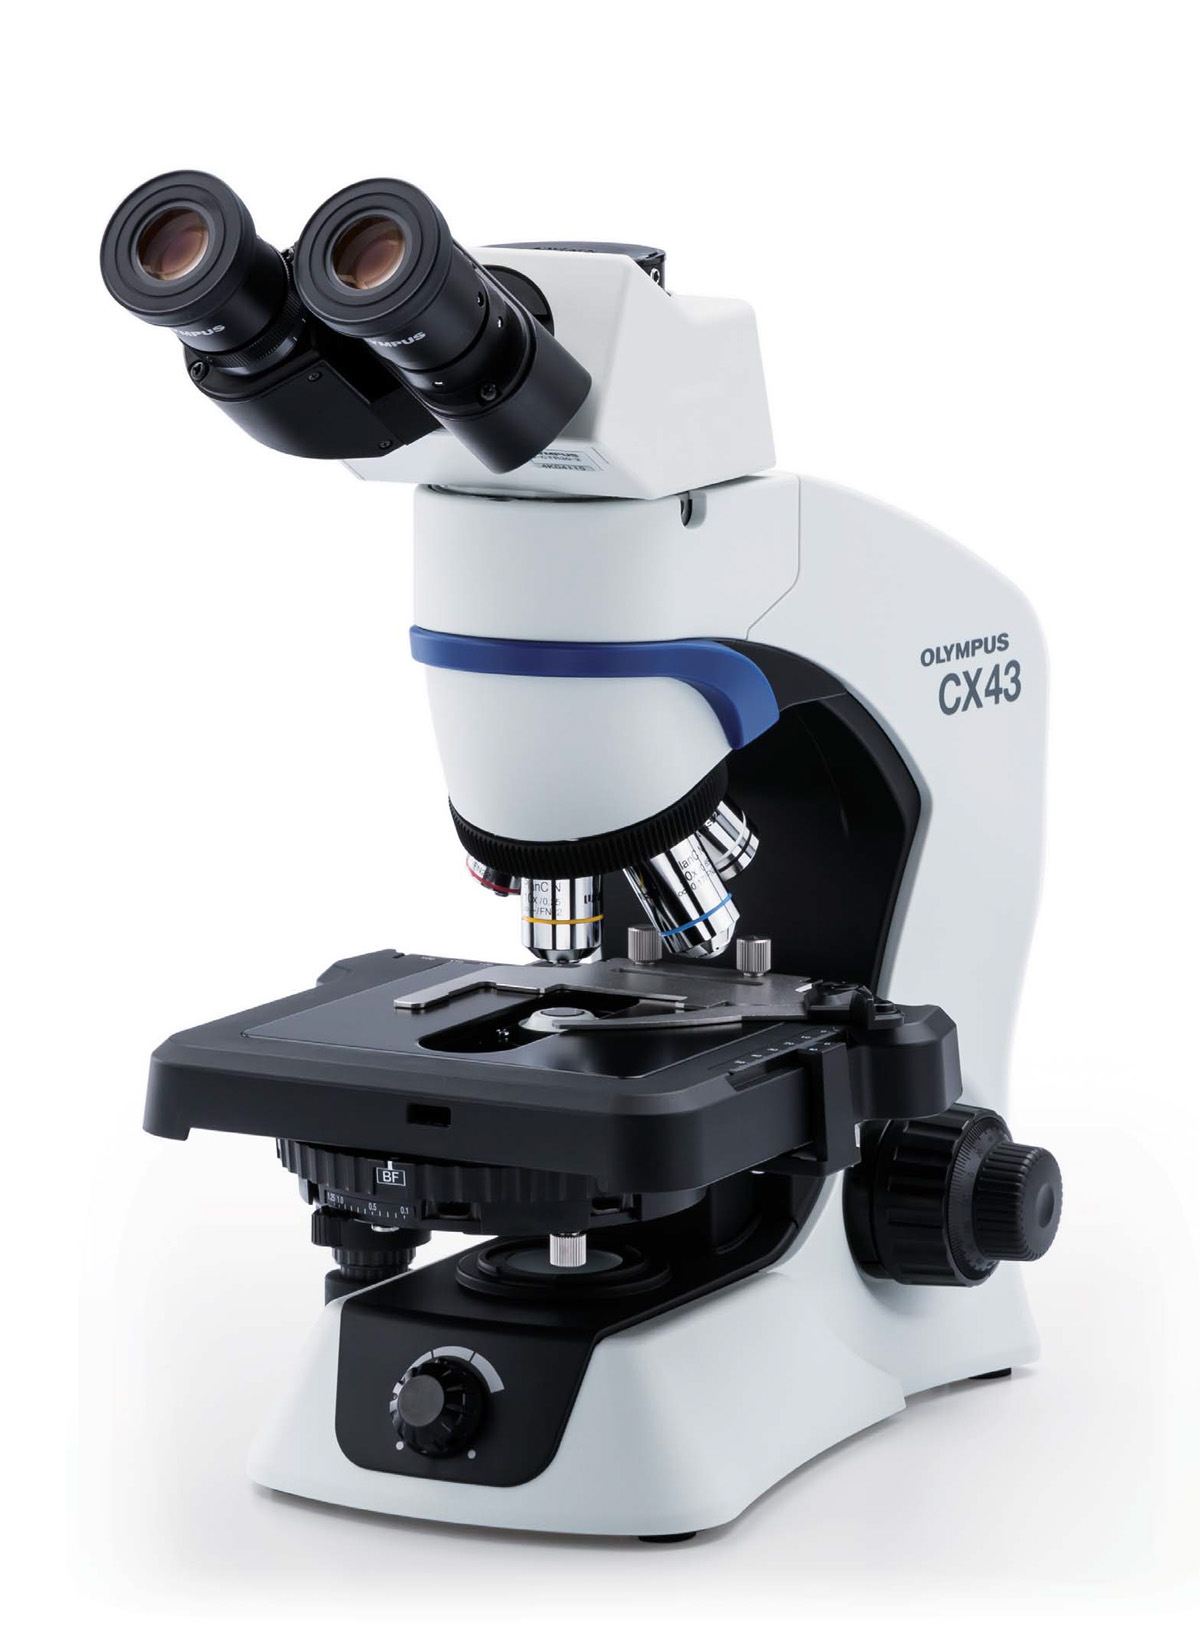 オリンパス生物顕微鏡 CX43 技術通販 美舘イメージング